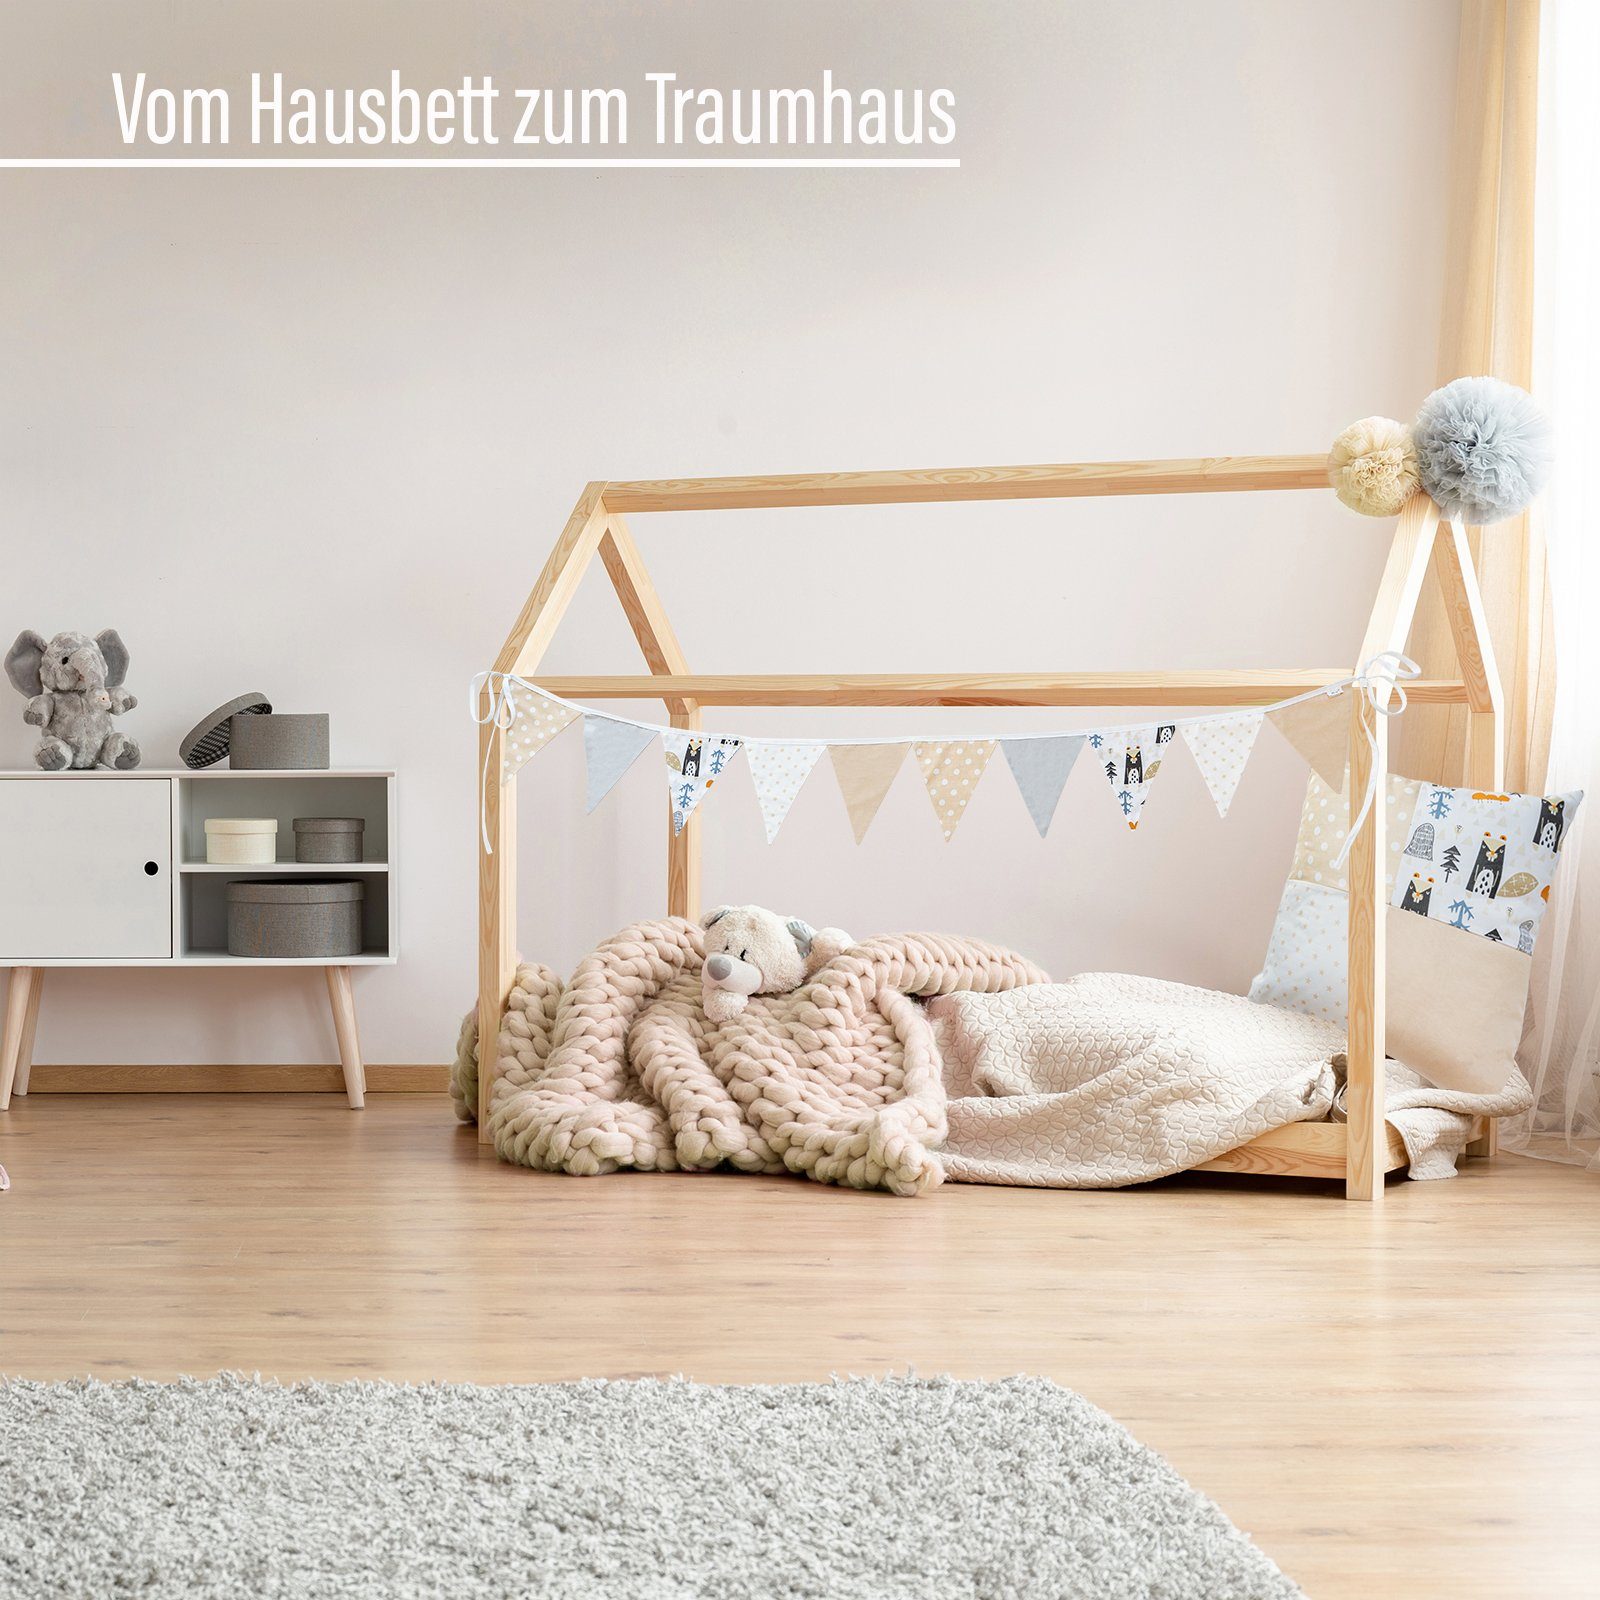 Alcube Betthimmel Kinderzimmer aus Set, & Kissen Deko Deko Wimpelkette - Weiß/Beige Babyzimmer, 40x40 Kinderbett für